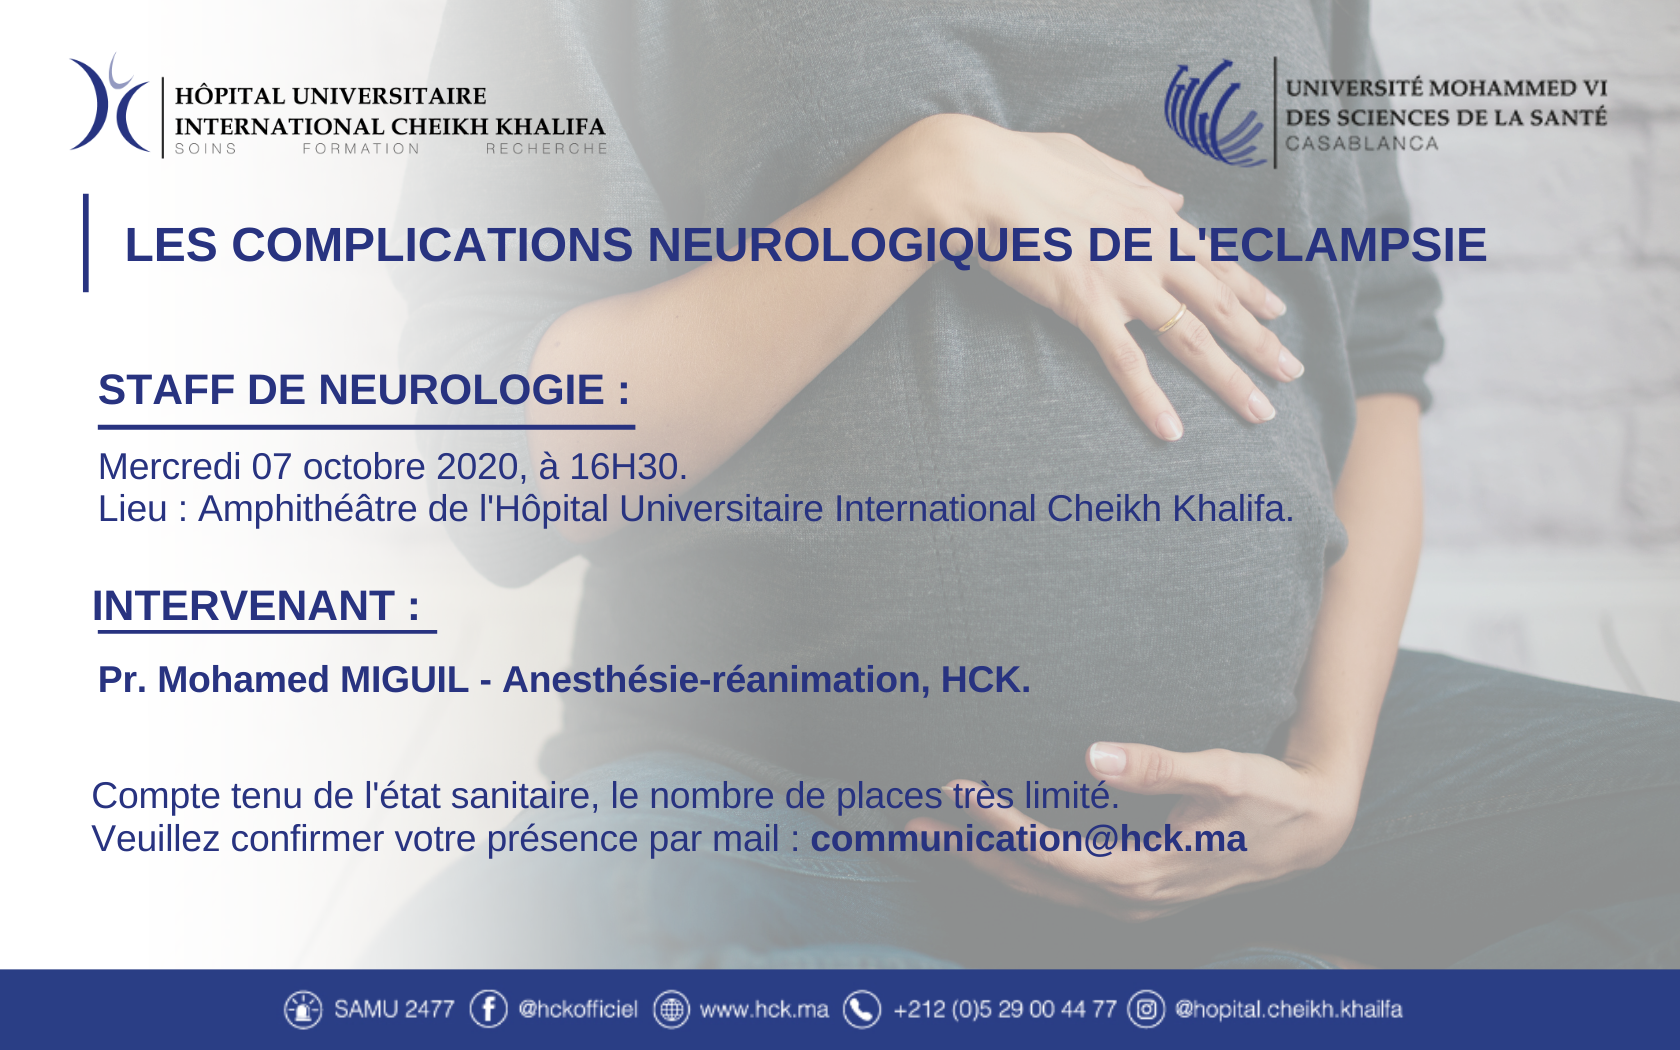 STAFF DE NEUROLOGIE : LES COMPLICATIONS NEUROLOGIQUES DE L'ECLAMPSIE